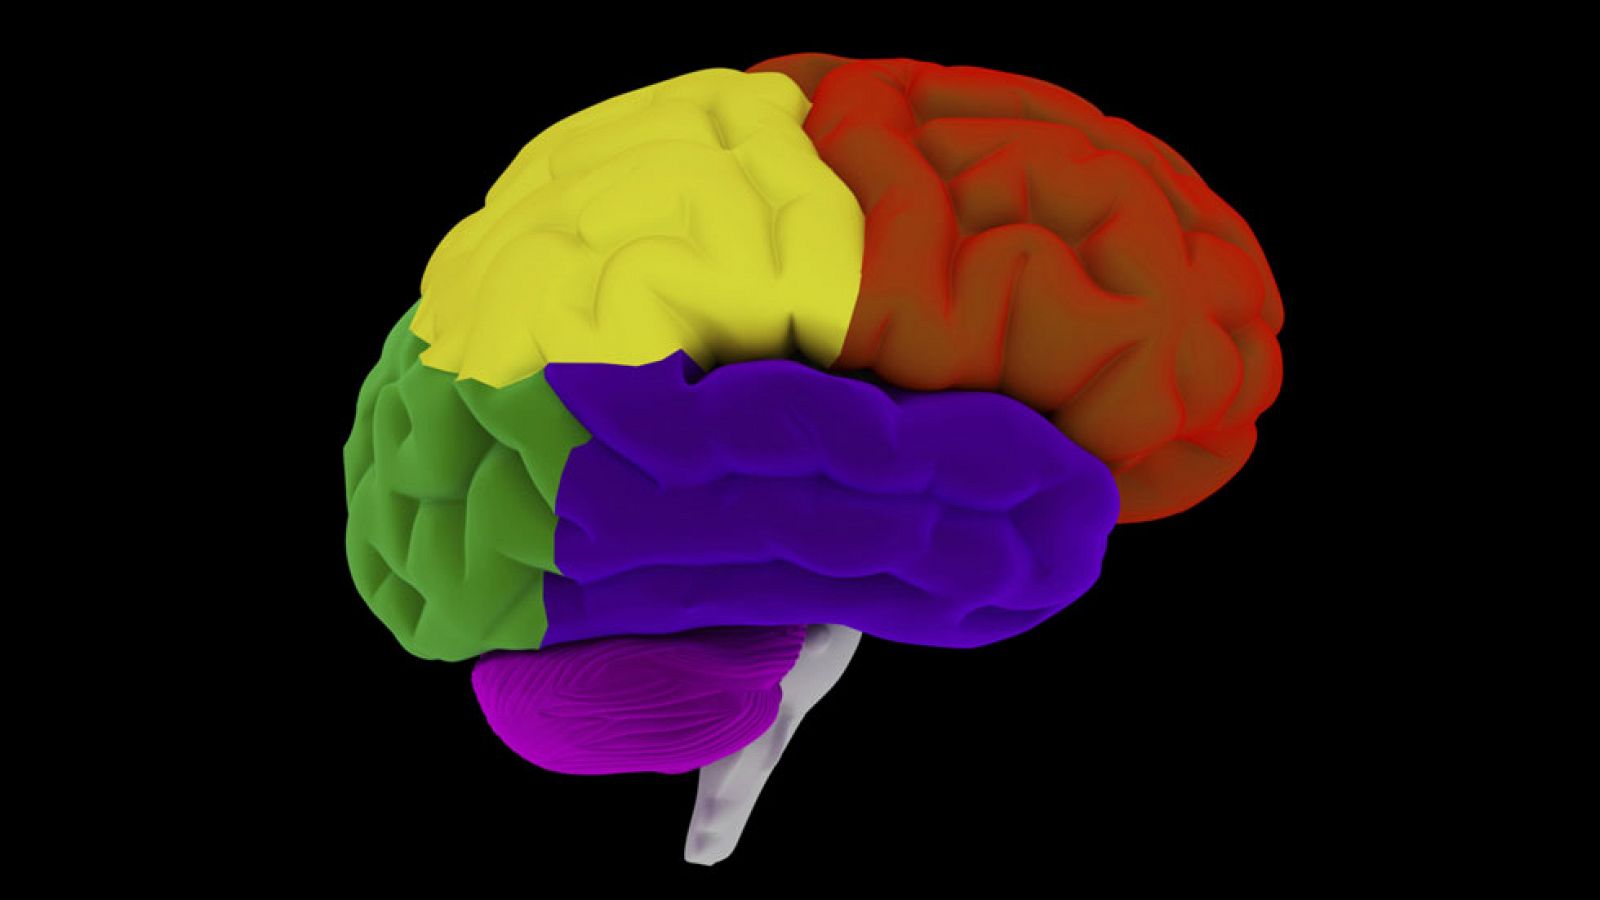 Ilustración del cerebro humano.